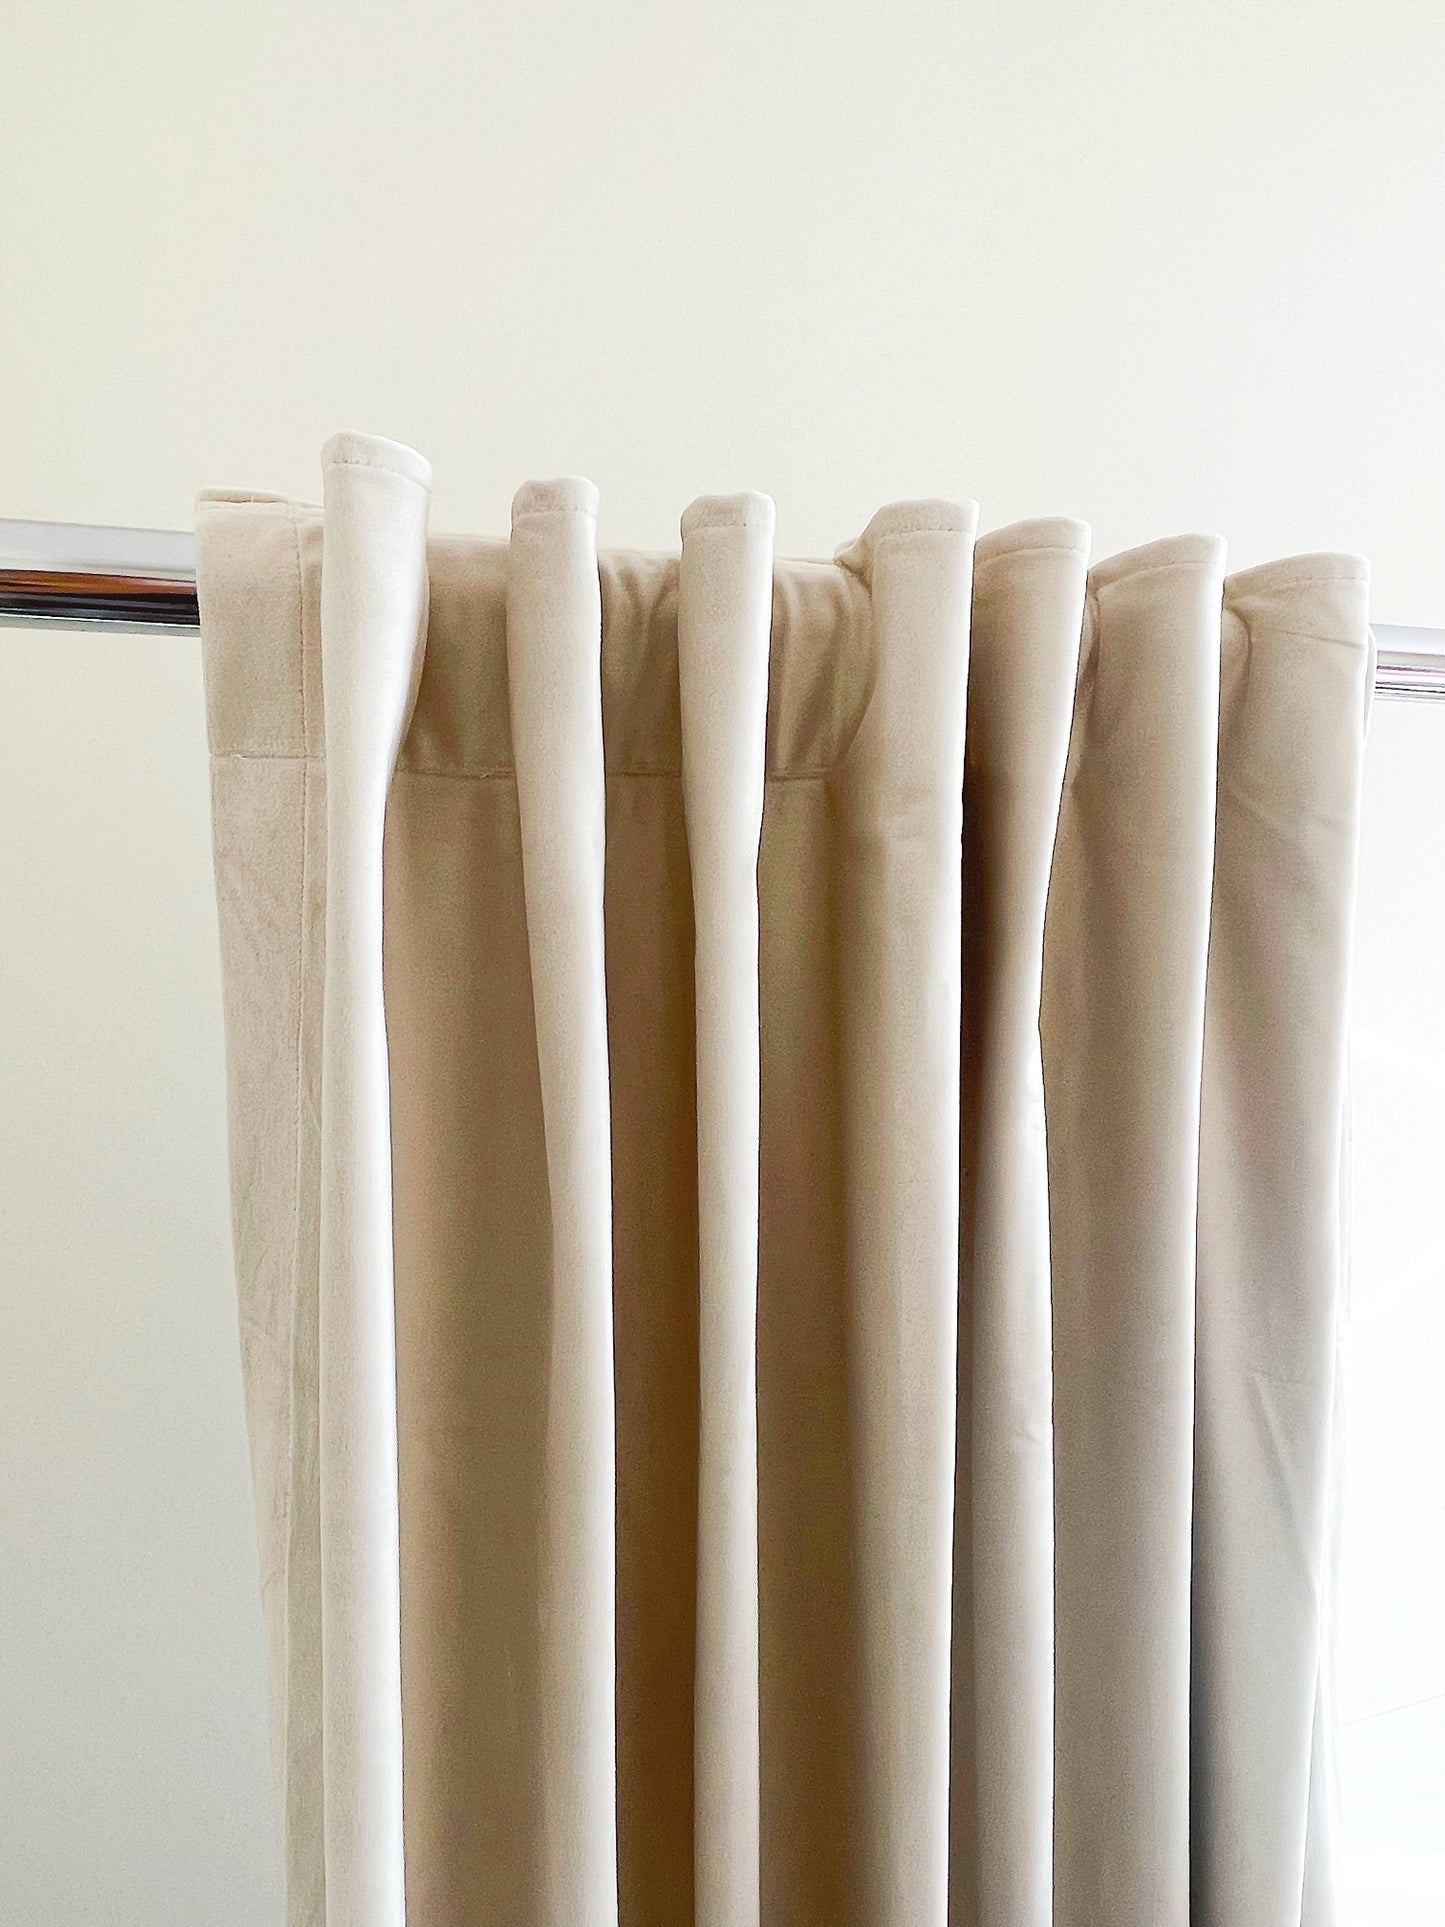 Velvet Curtain | Mist WHITE Blackout Curtain | velvet curtain panels | Curtain Panels | Custom Curtains 